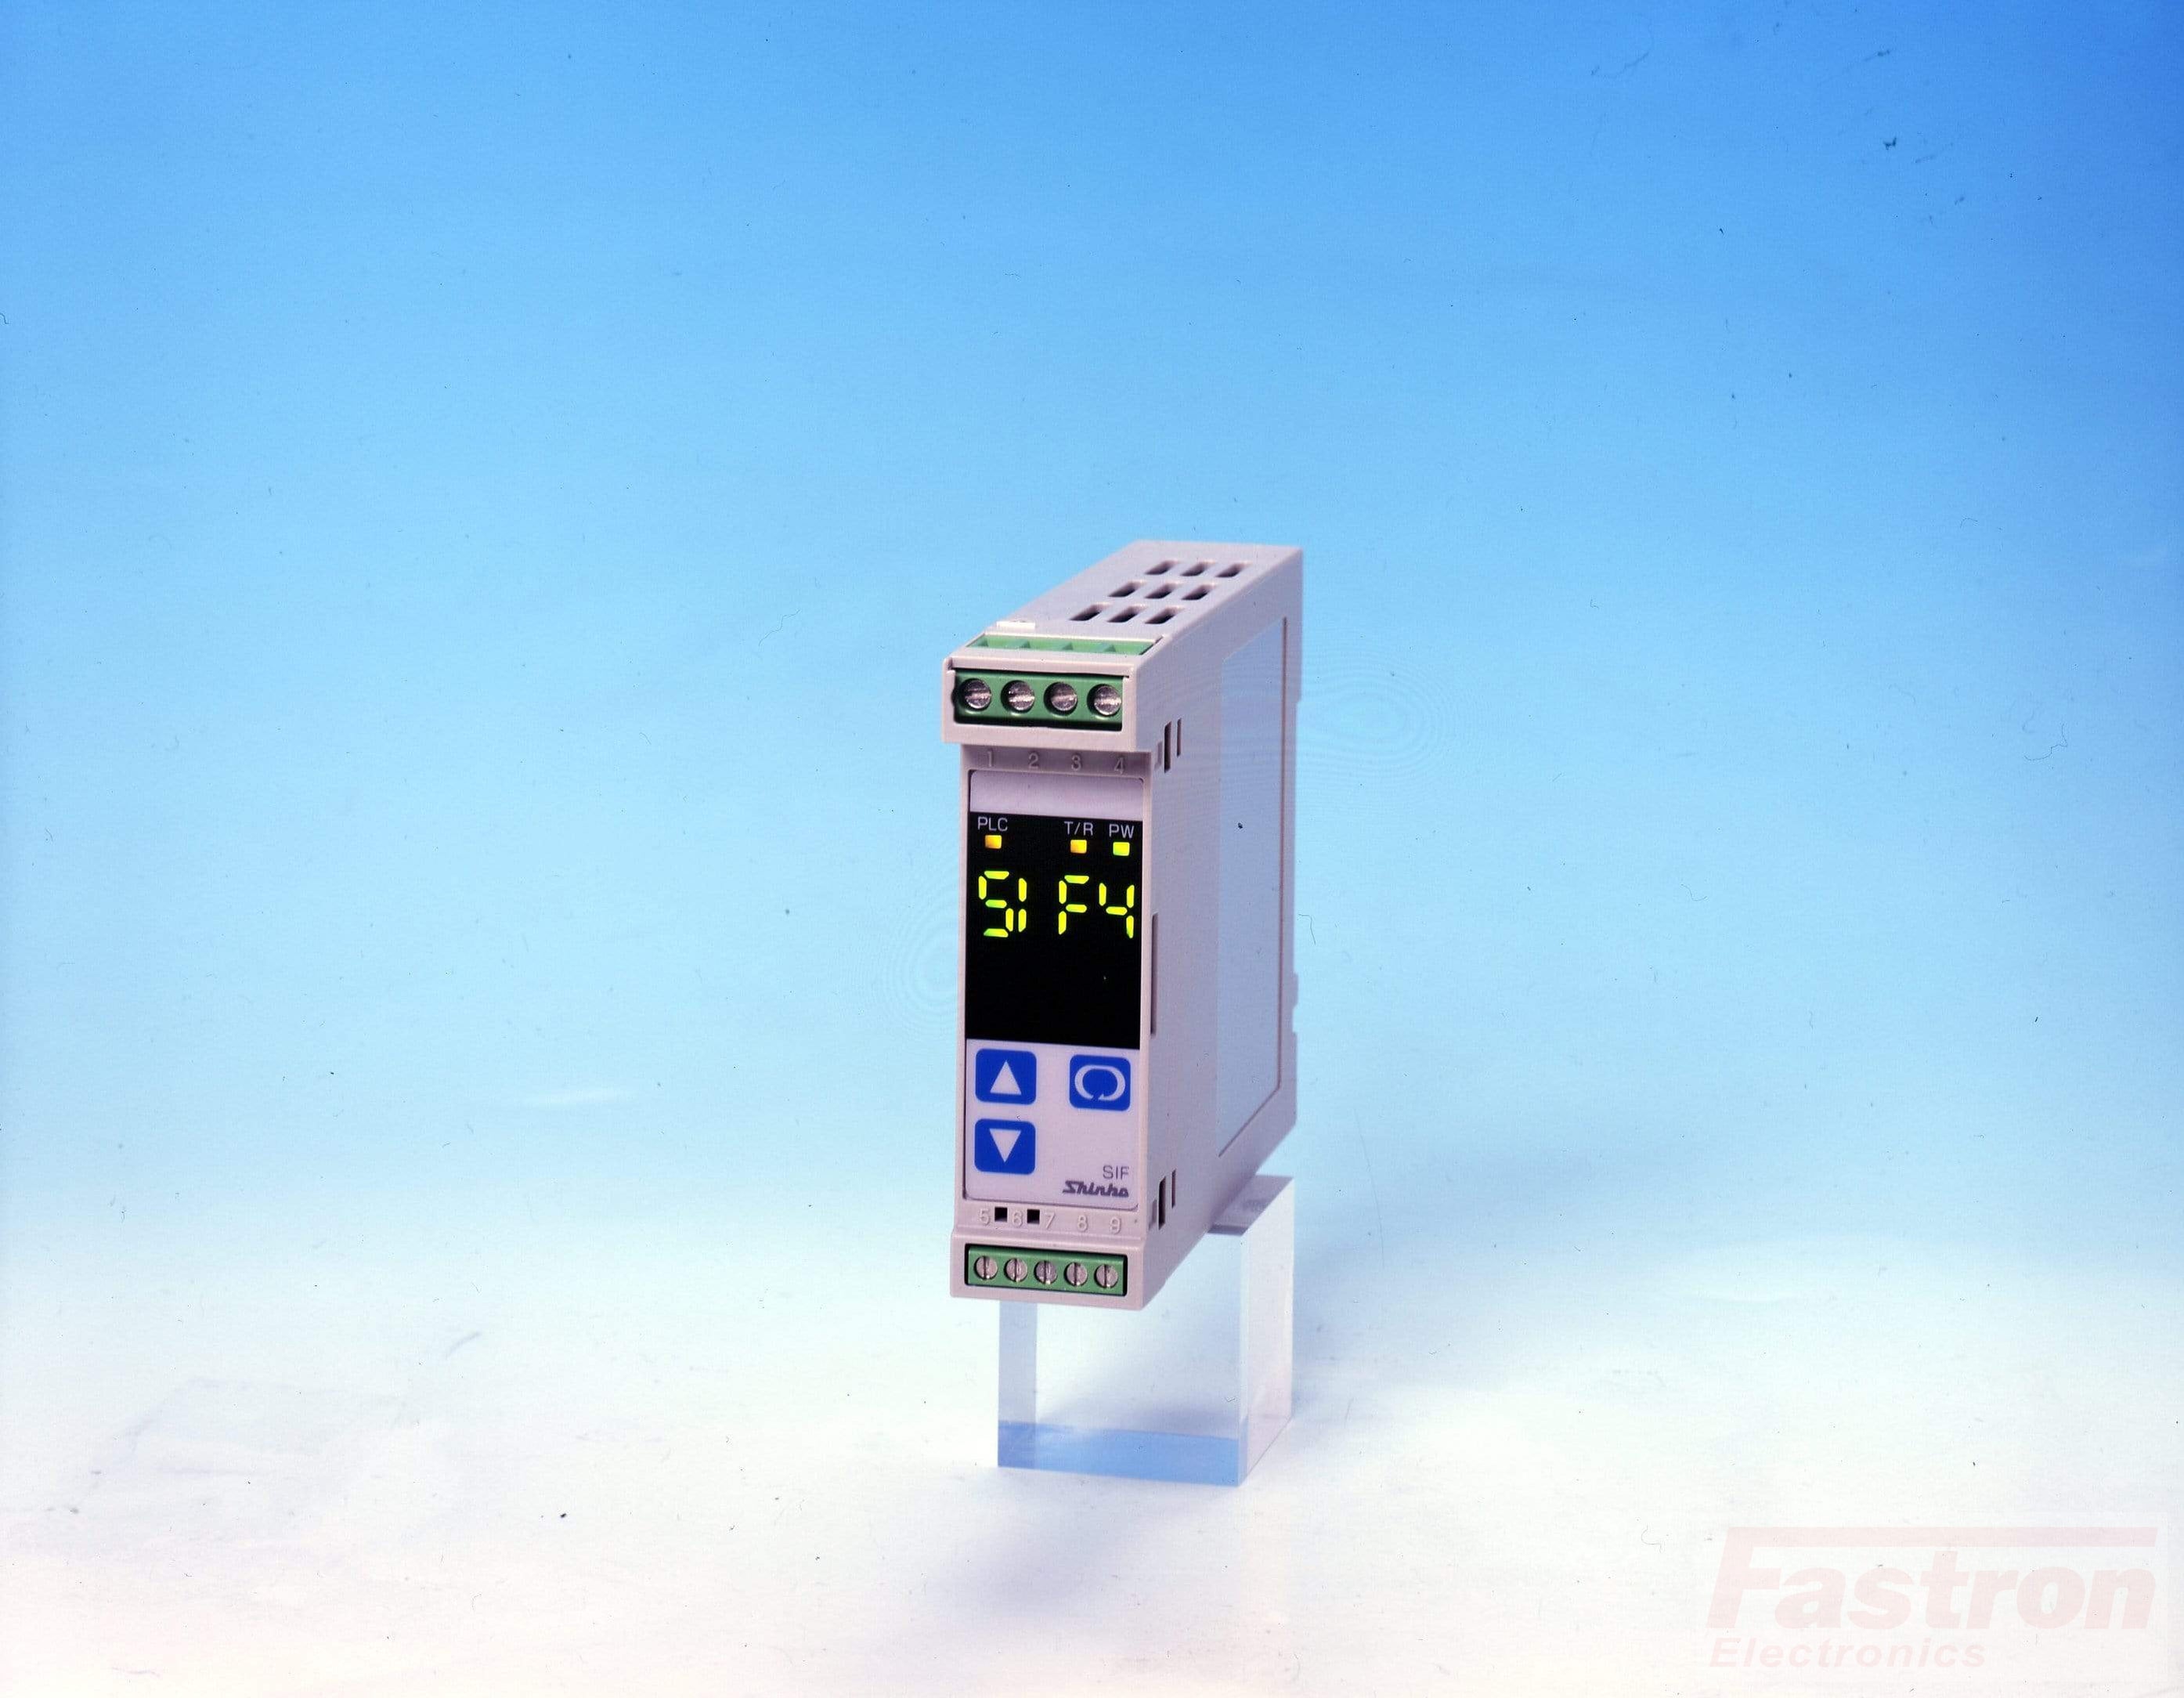 RAU-O Signal Converter TC DC Amps, DC Volts, POT, RS485 Comms, 100-240 VAC